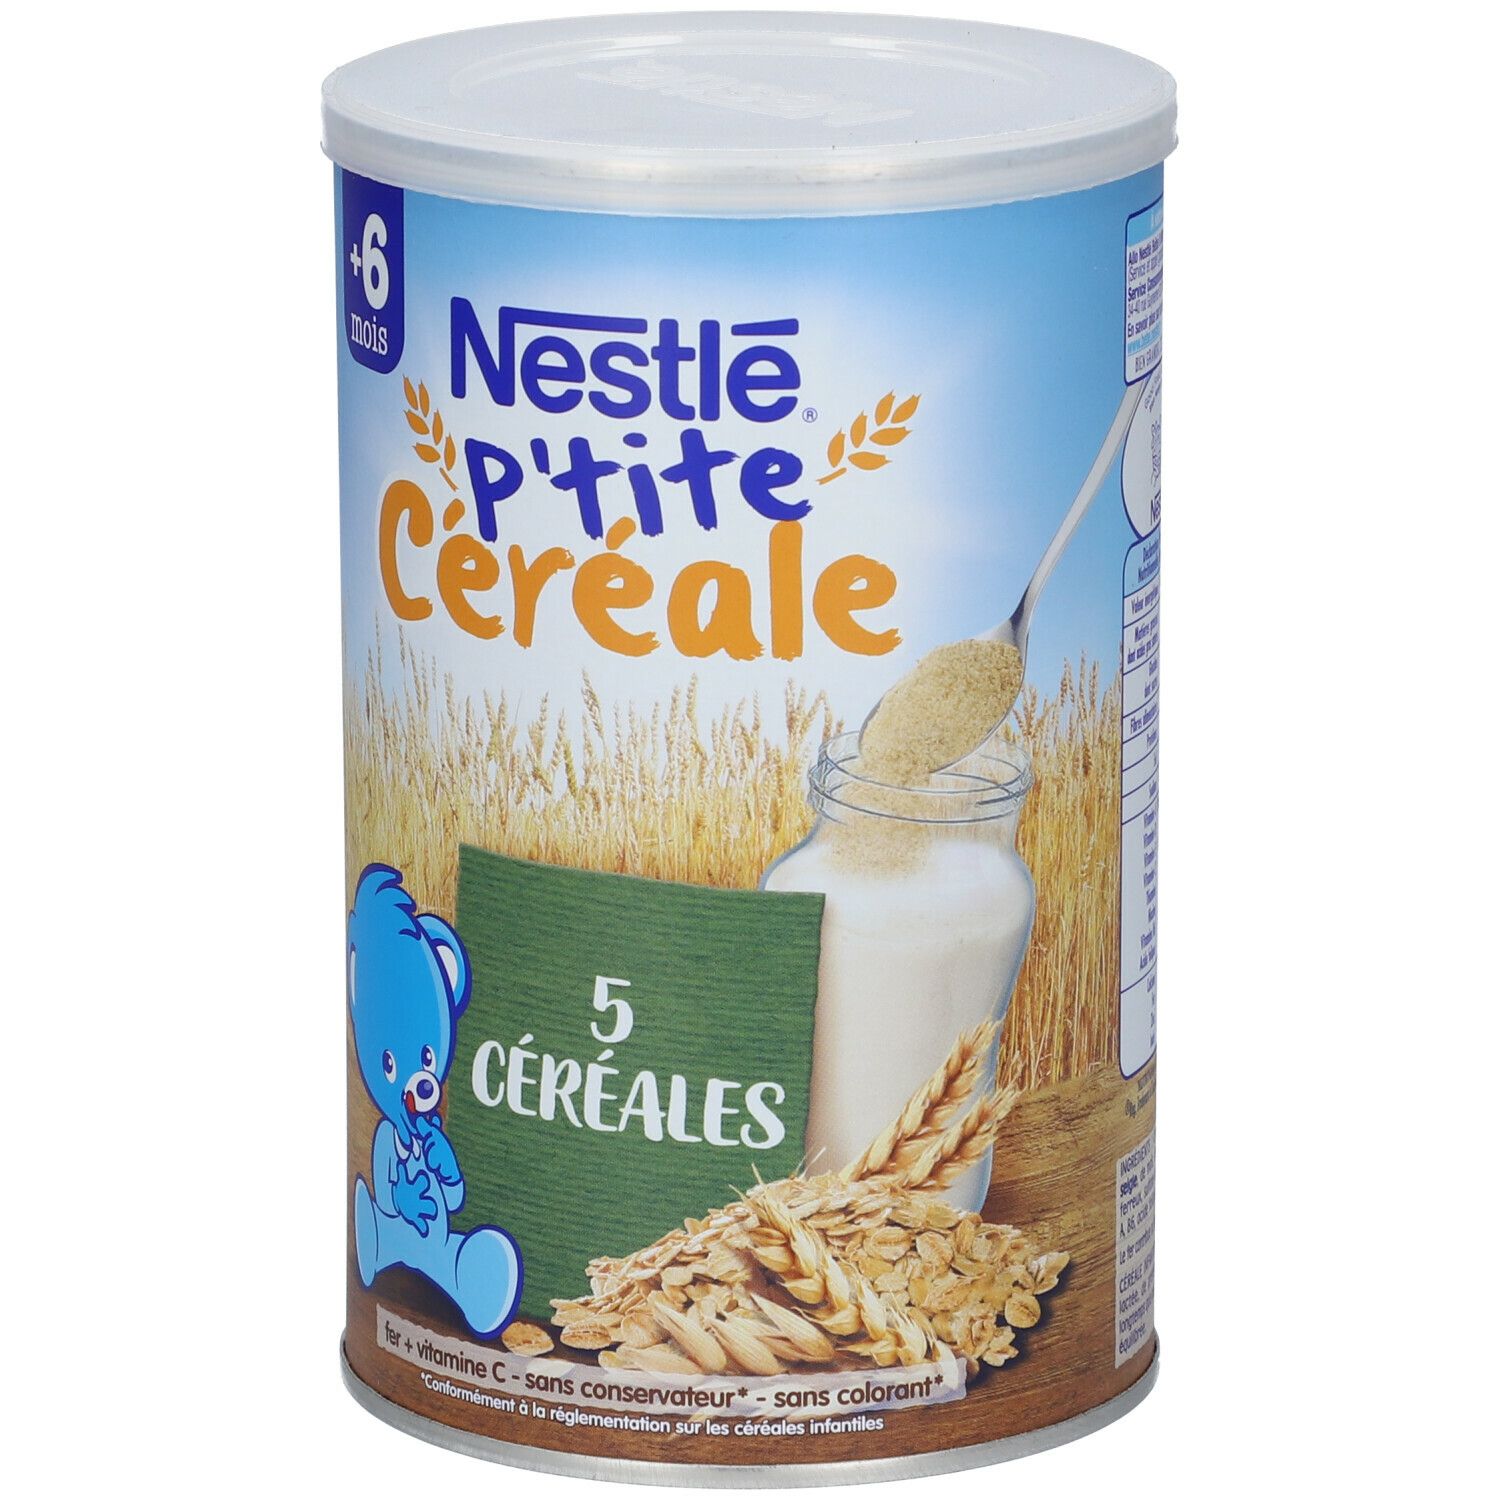 Nestlé® P'tite Céréale 5 Céréales Saveur Nature